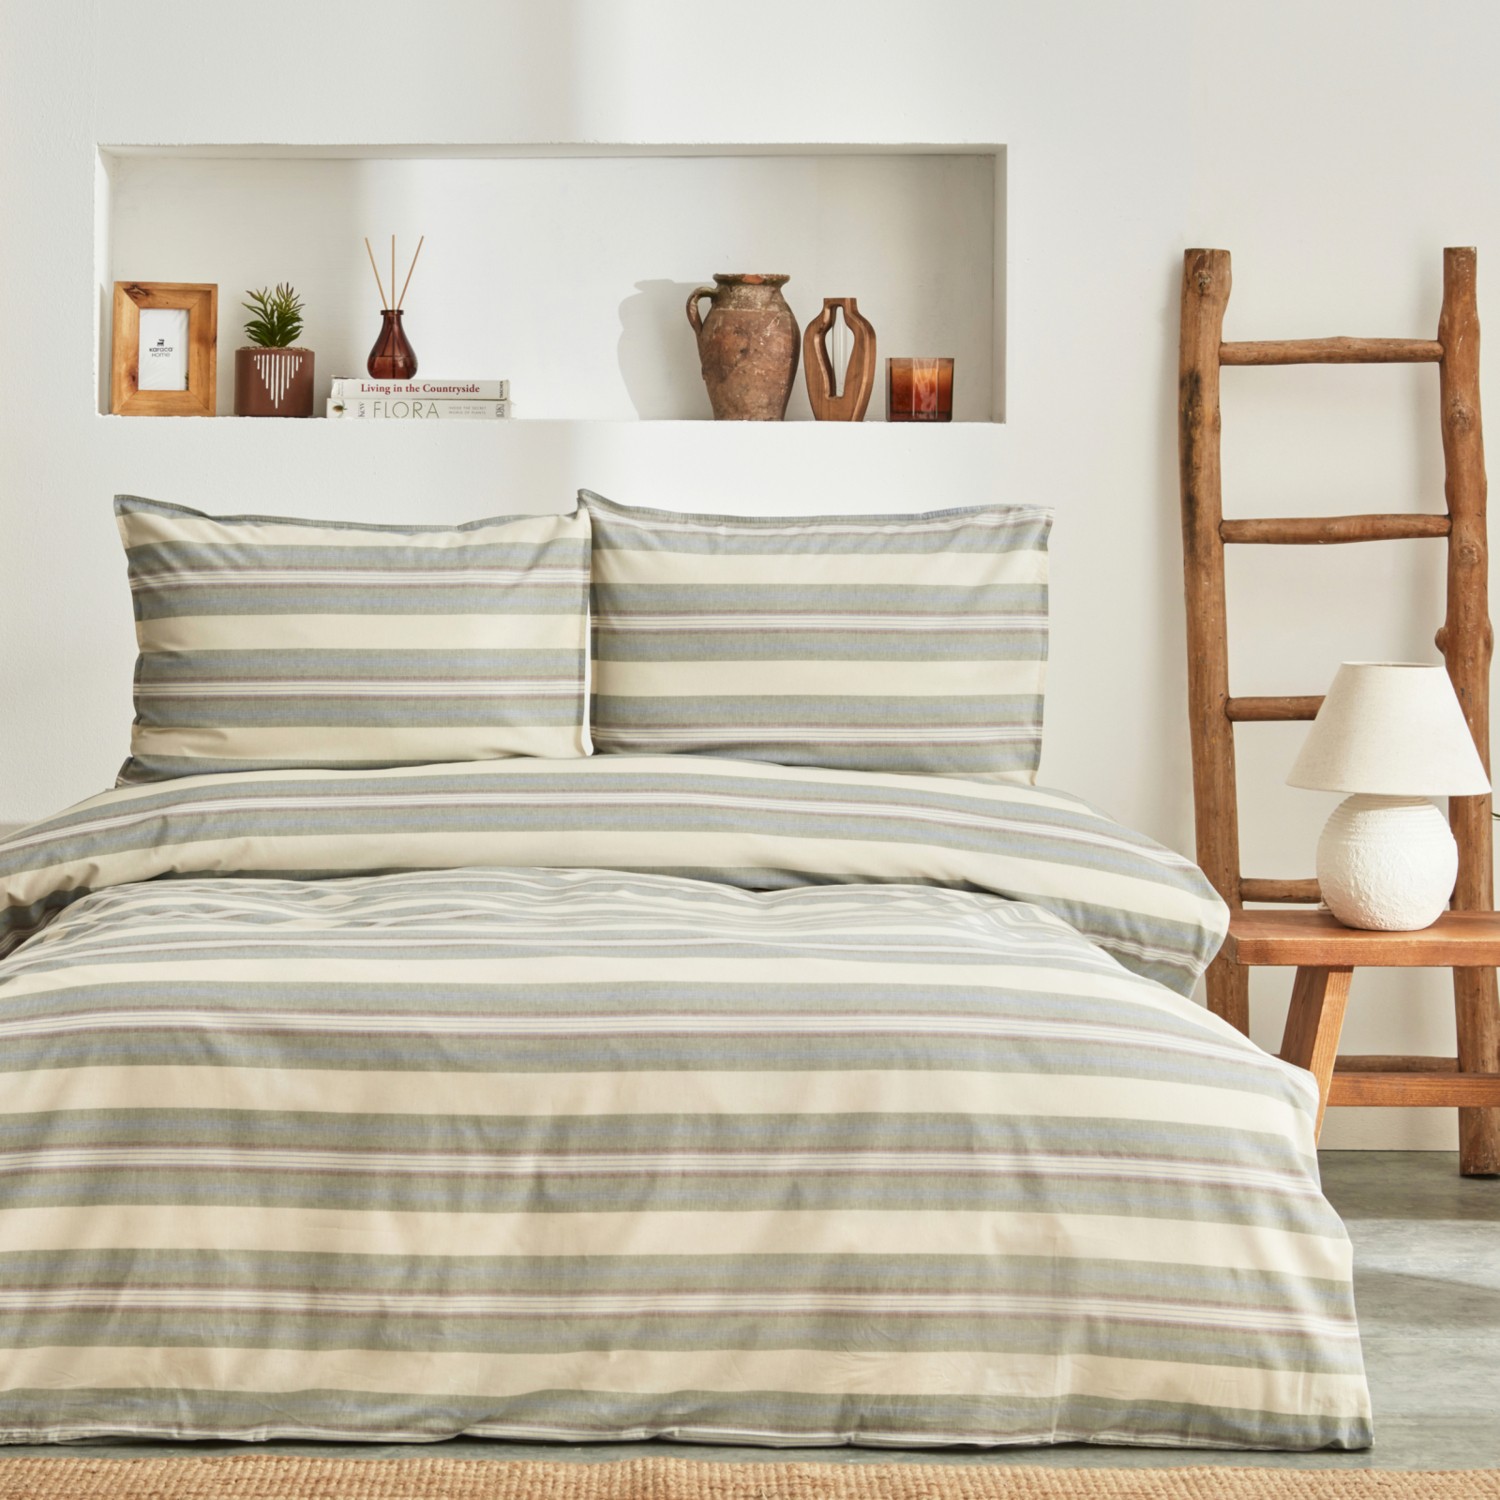 комплект постельного белья с вышивкой karaca home Комплект постельного белья Karaca Home Desert, зеленый